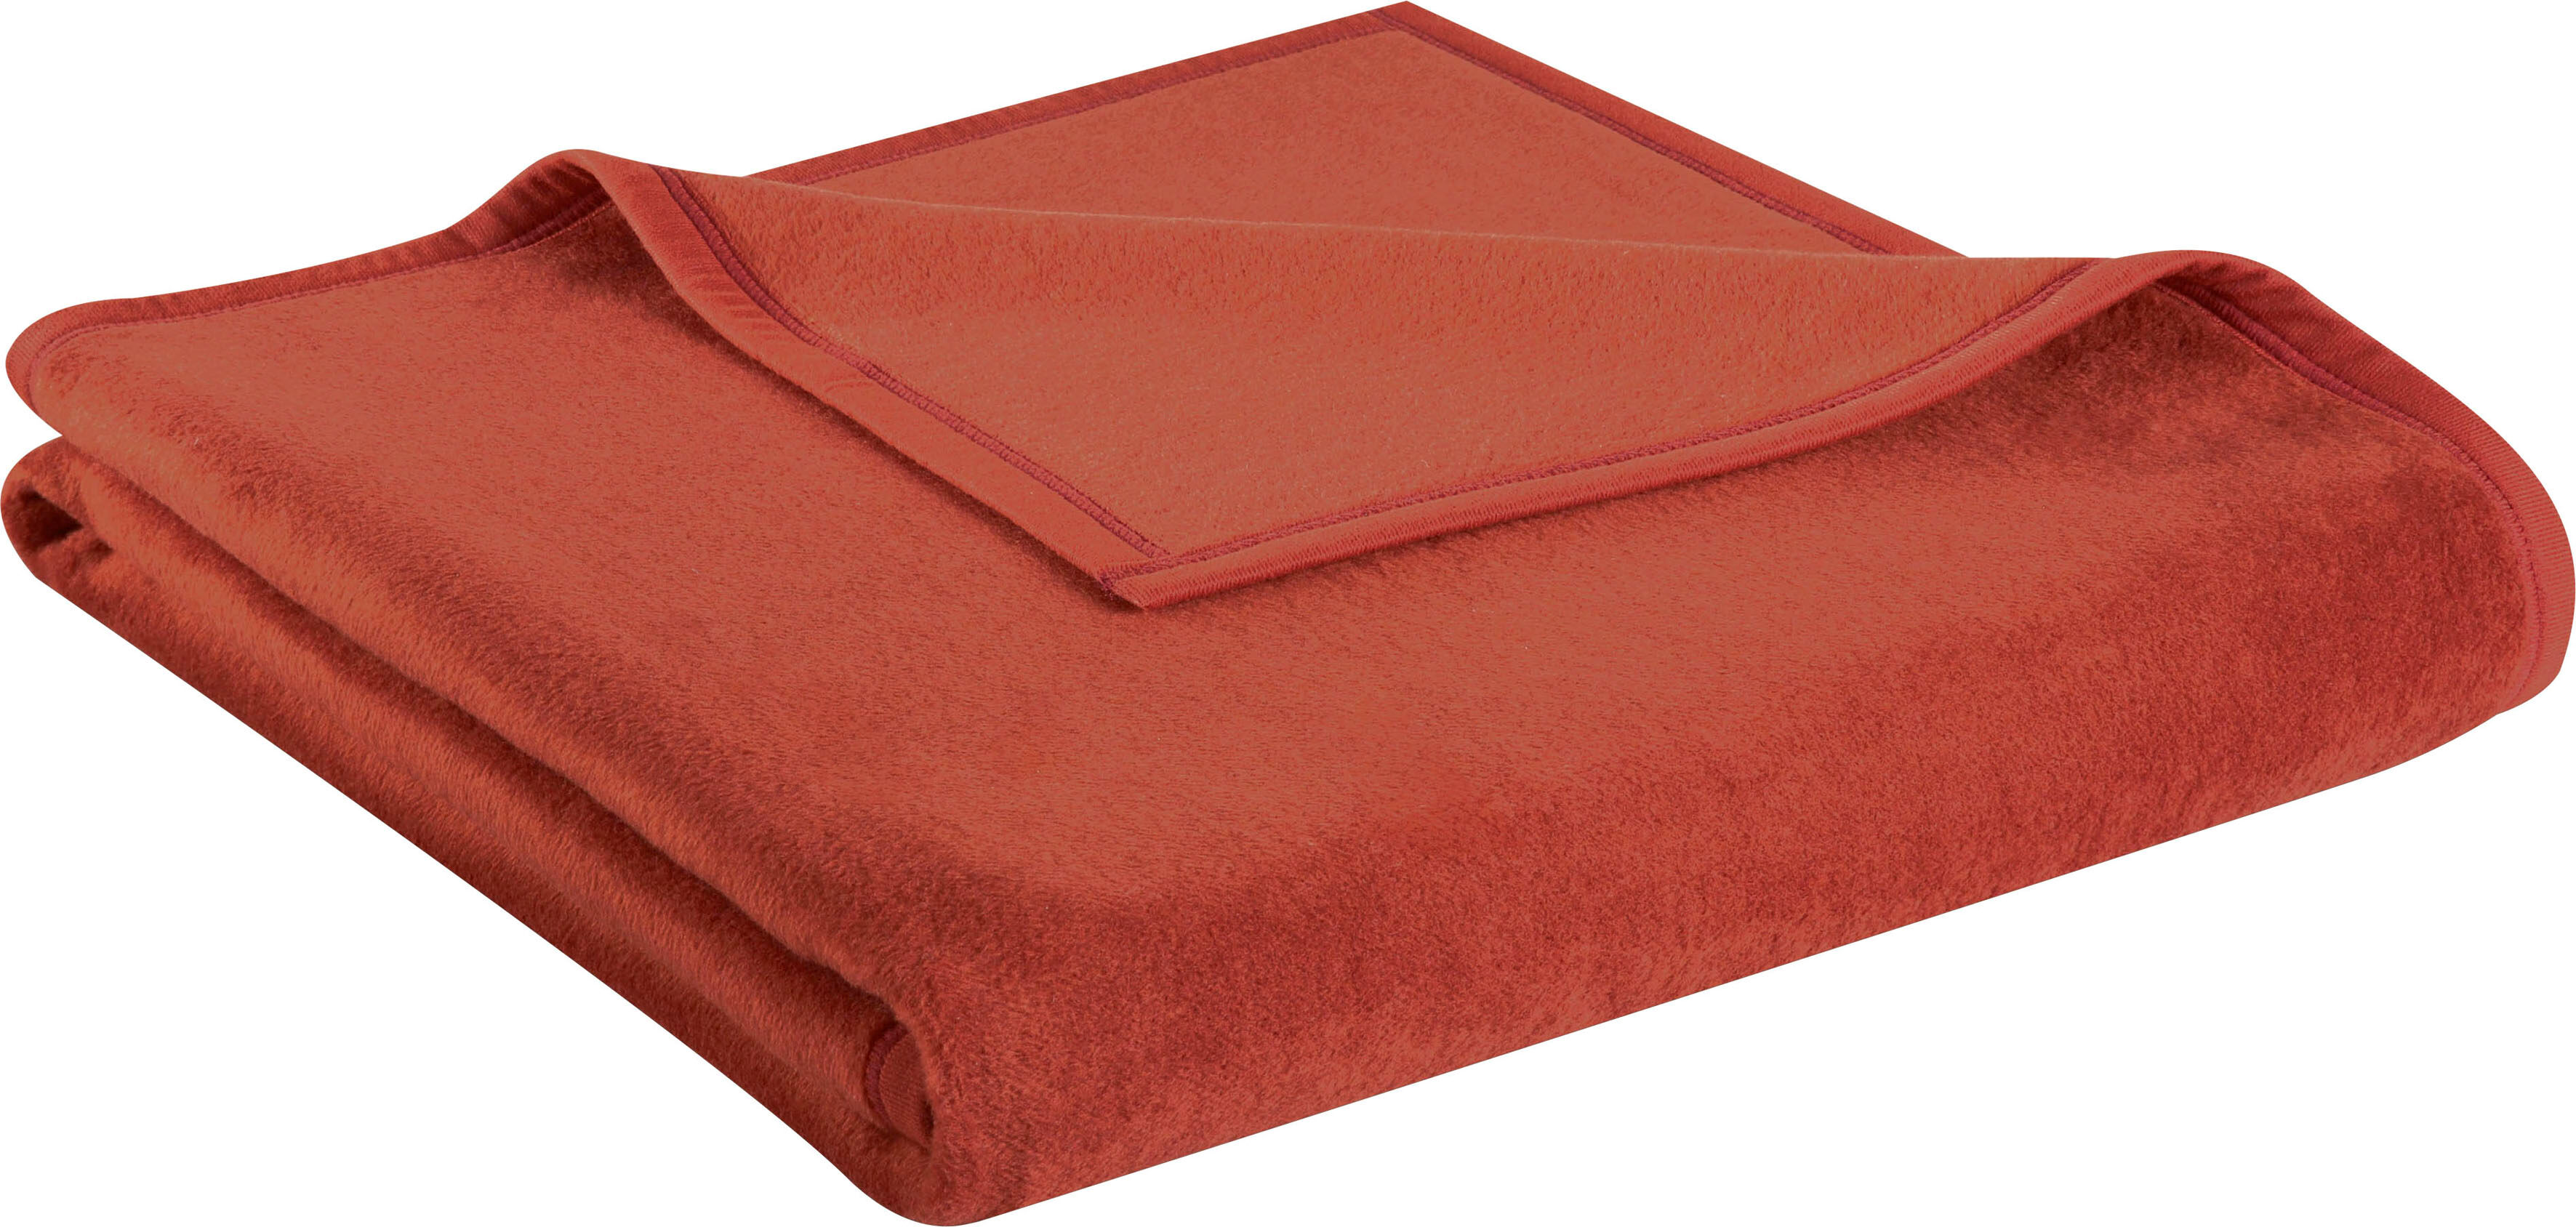 BIEDERLACK Wohndecke »Uno Cotton«, in schönen Unifarben rot  150x200 cm